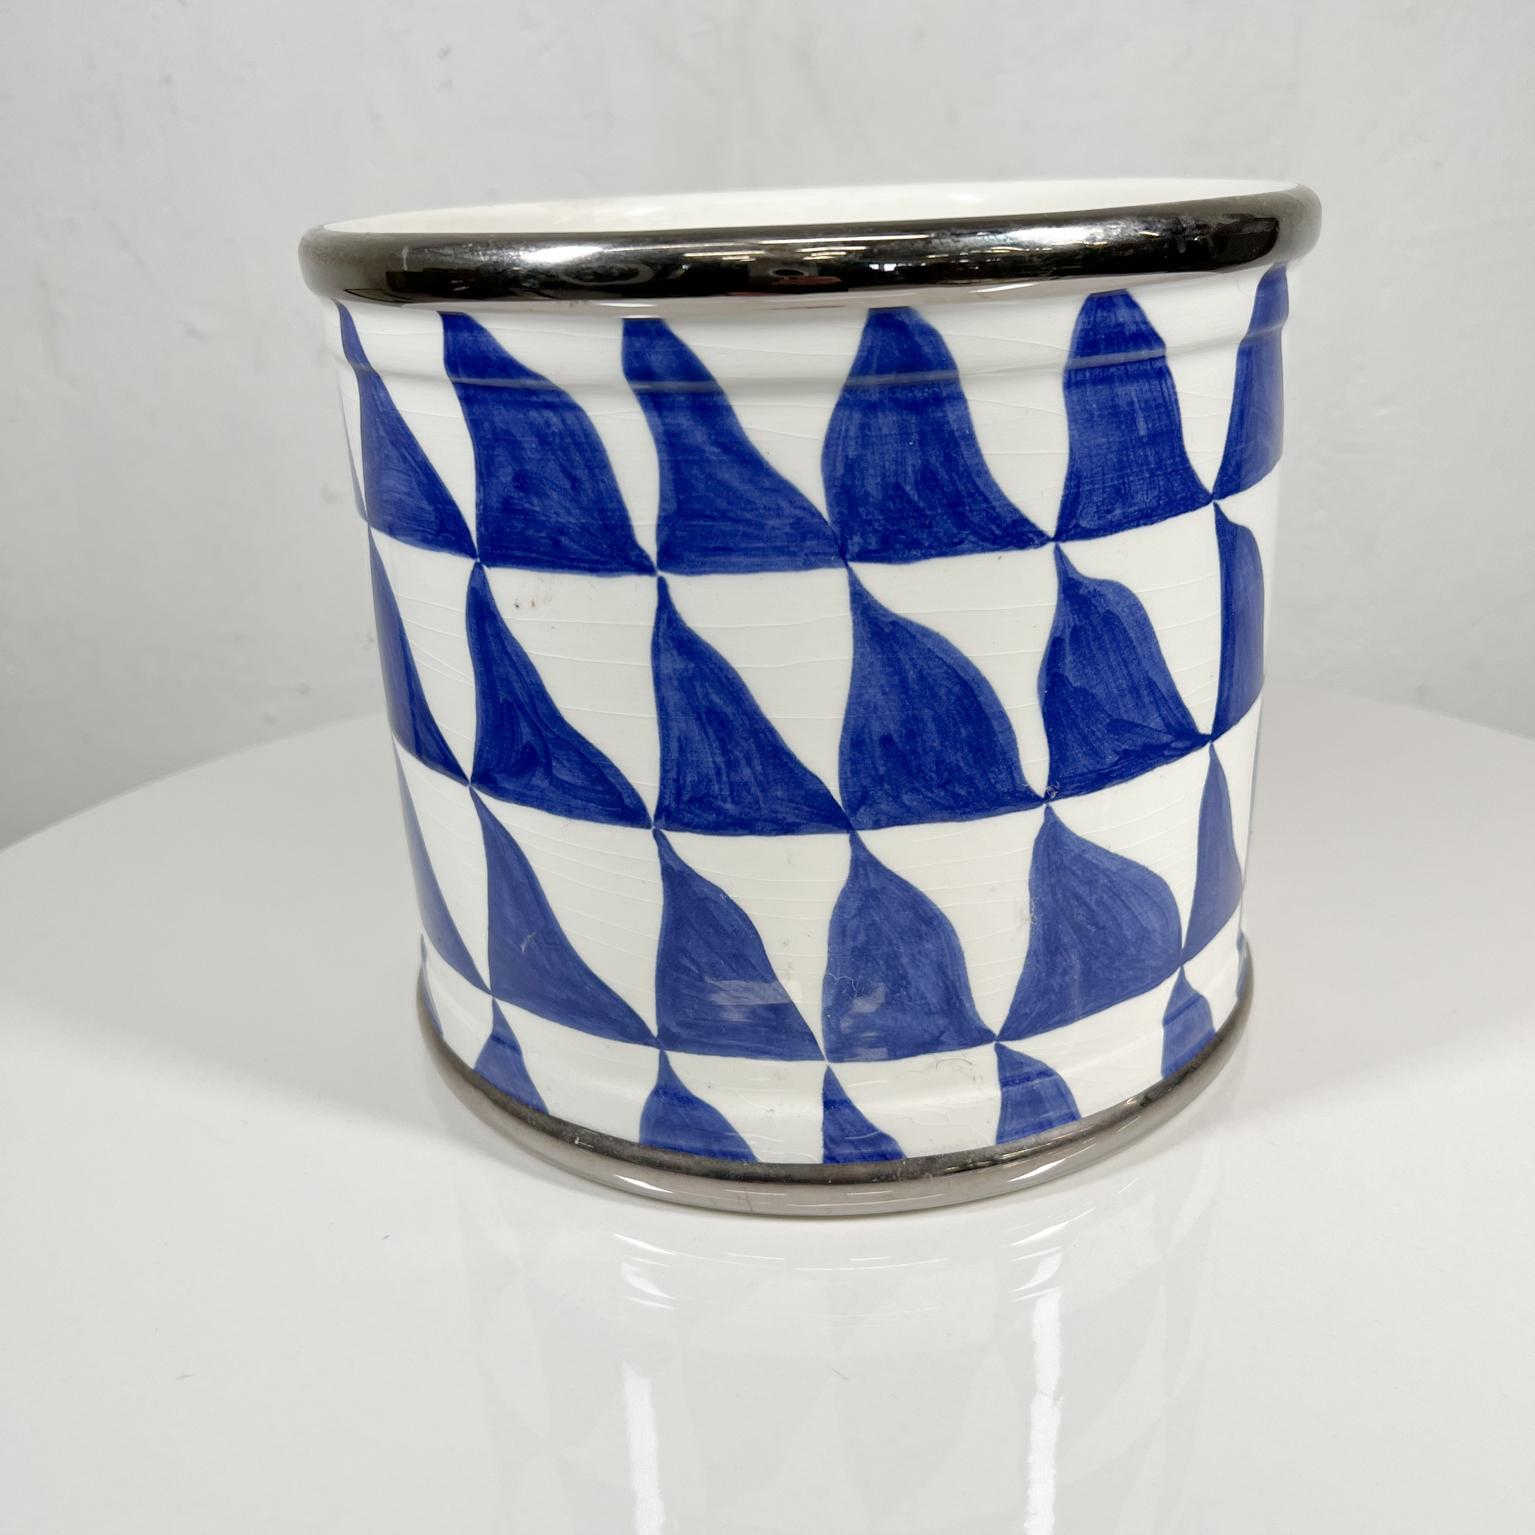 Late 20th Century 1970s Geometric Planter Pot by Tiffany & Co Este Ceramiche, Italy